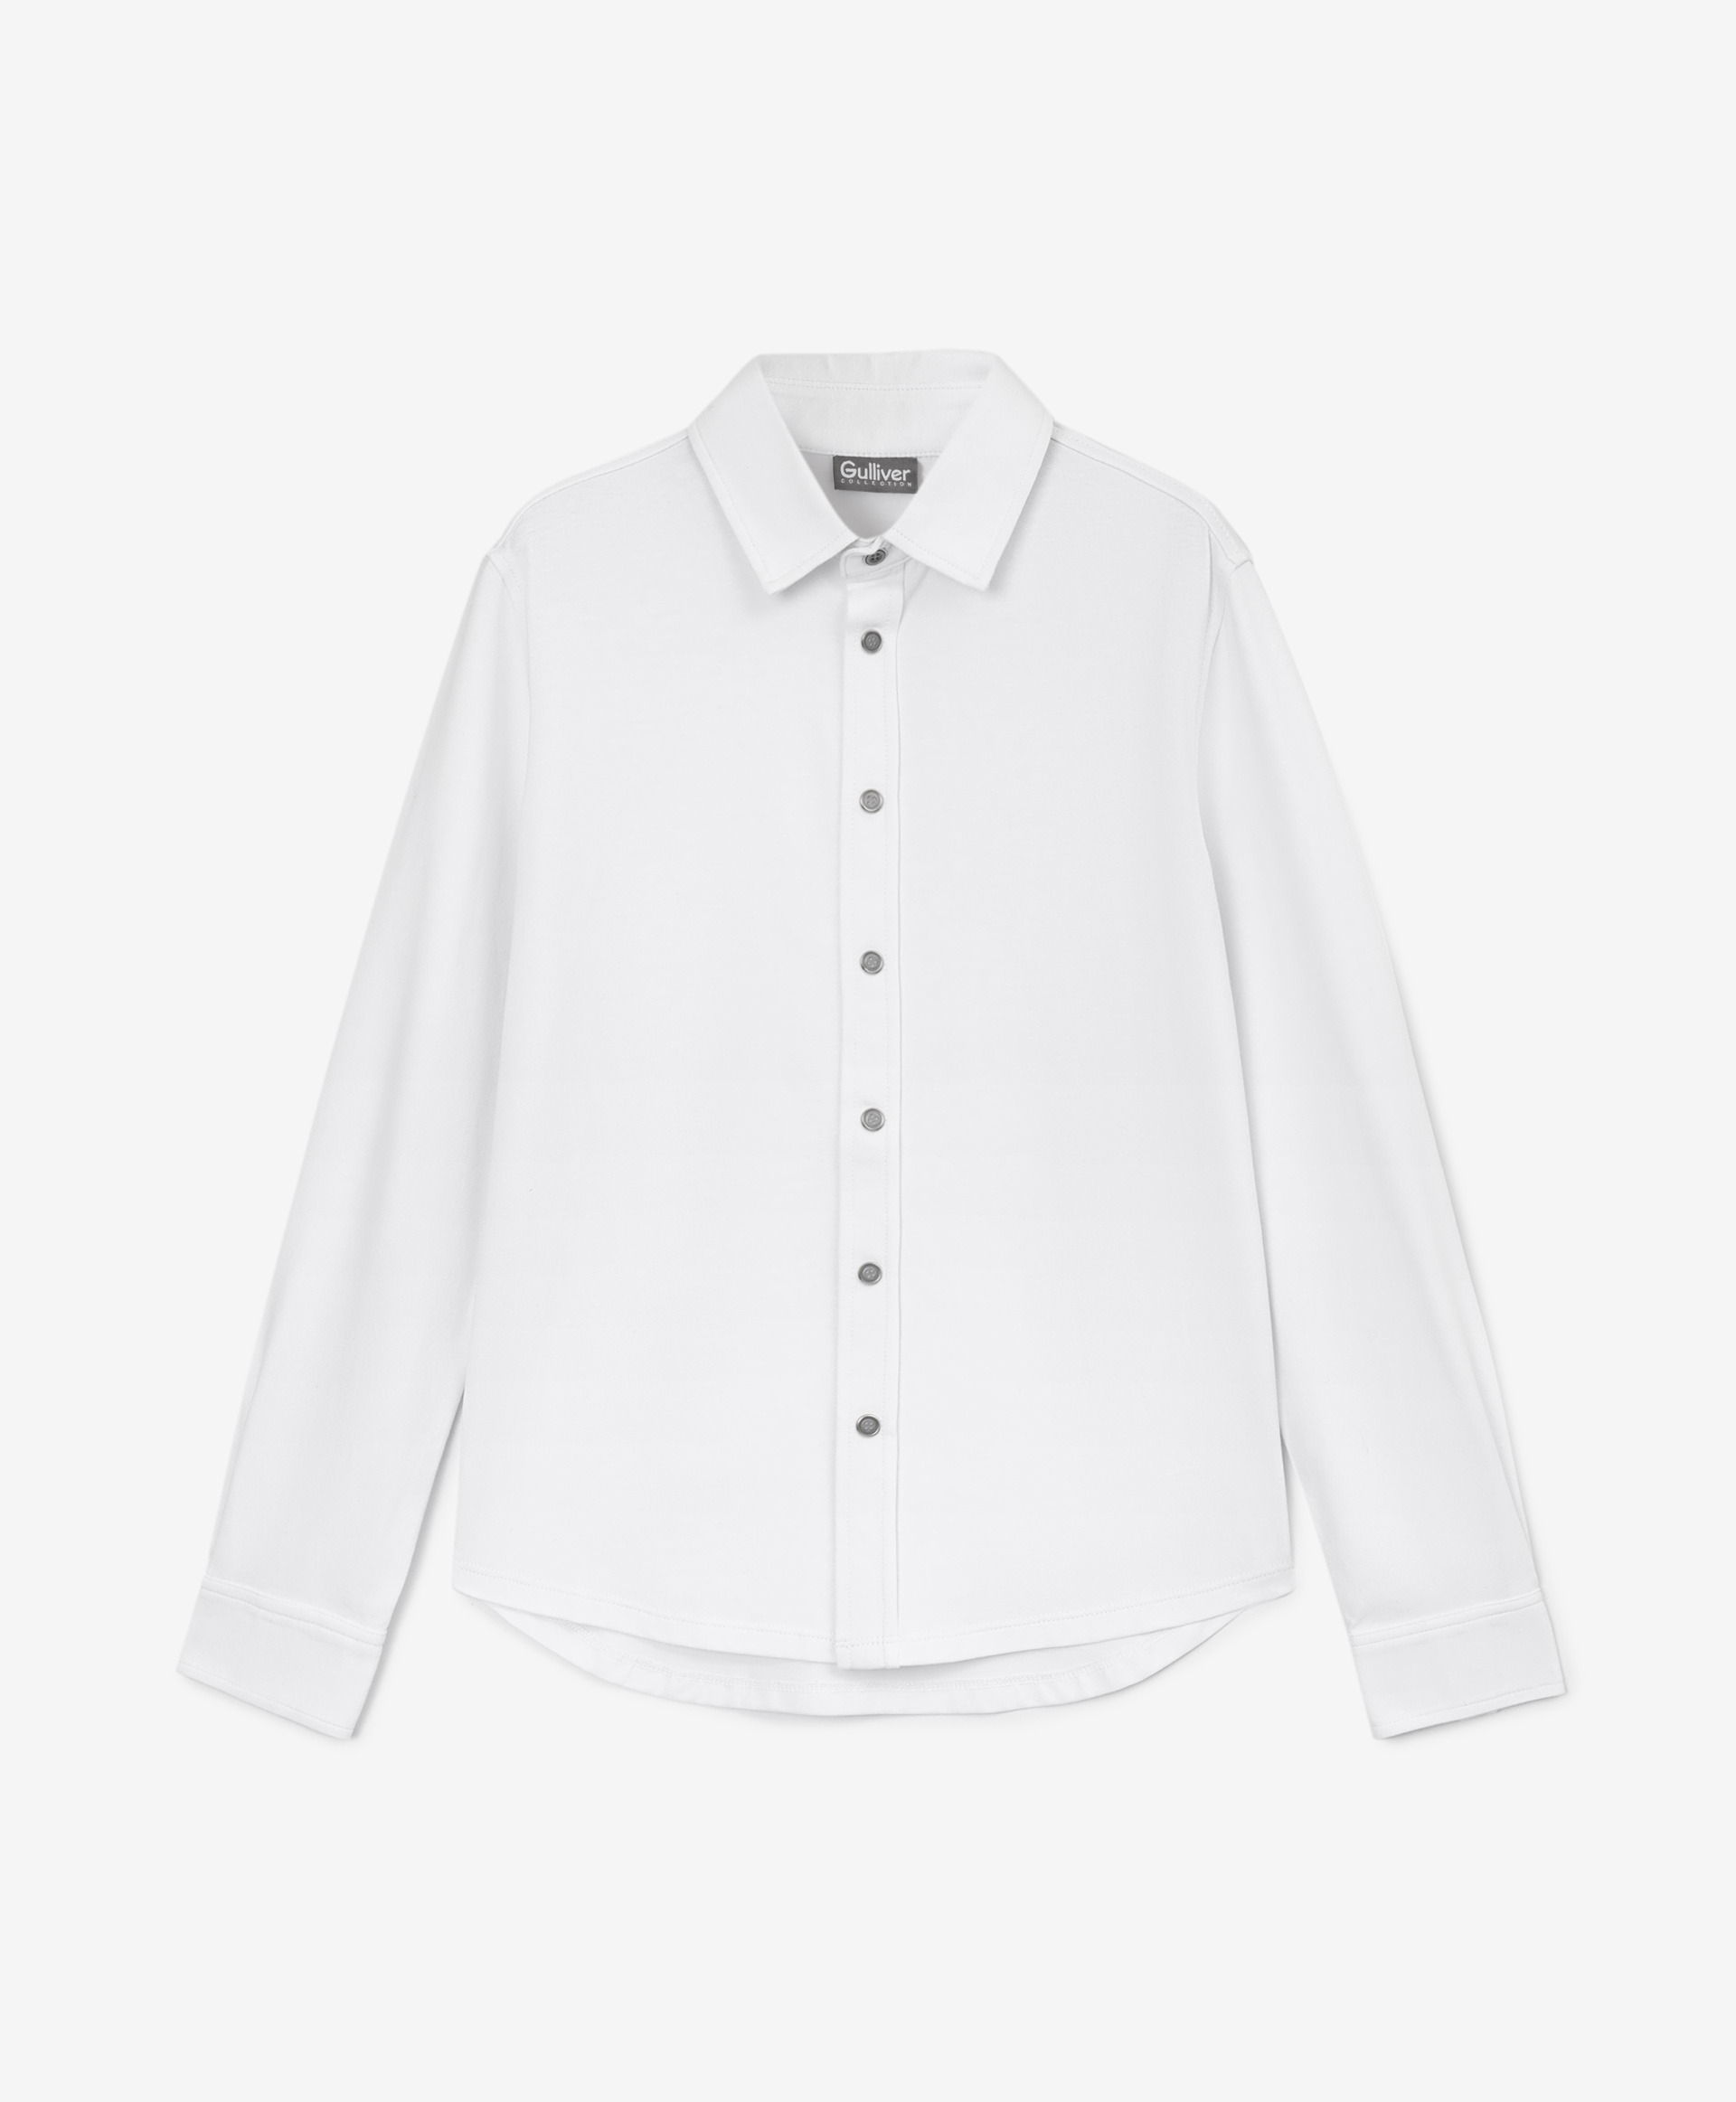 Купить 200GSBC1404, Рубашка белая с длинным рукавом Gulliver, белый, 146, Хлопок, Мужской, Демисезон, ШКОЛЬНАЯ ФОРМА 2021-2022 (shop: GulliverMarket Gulliver Market)